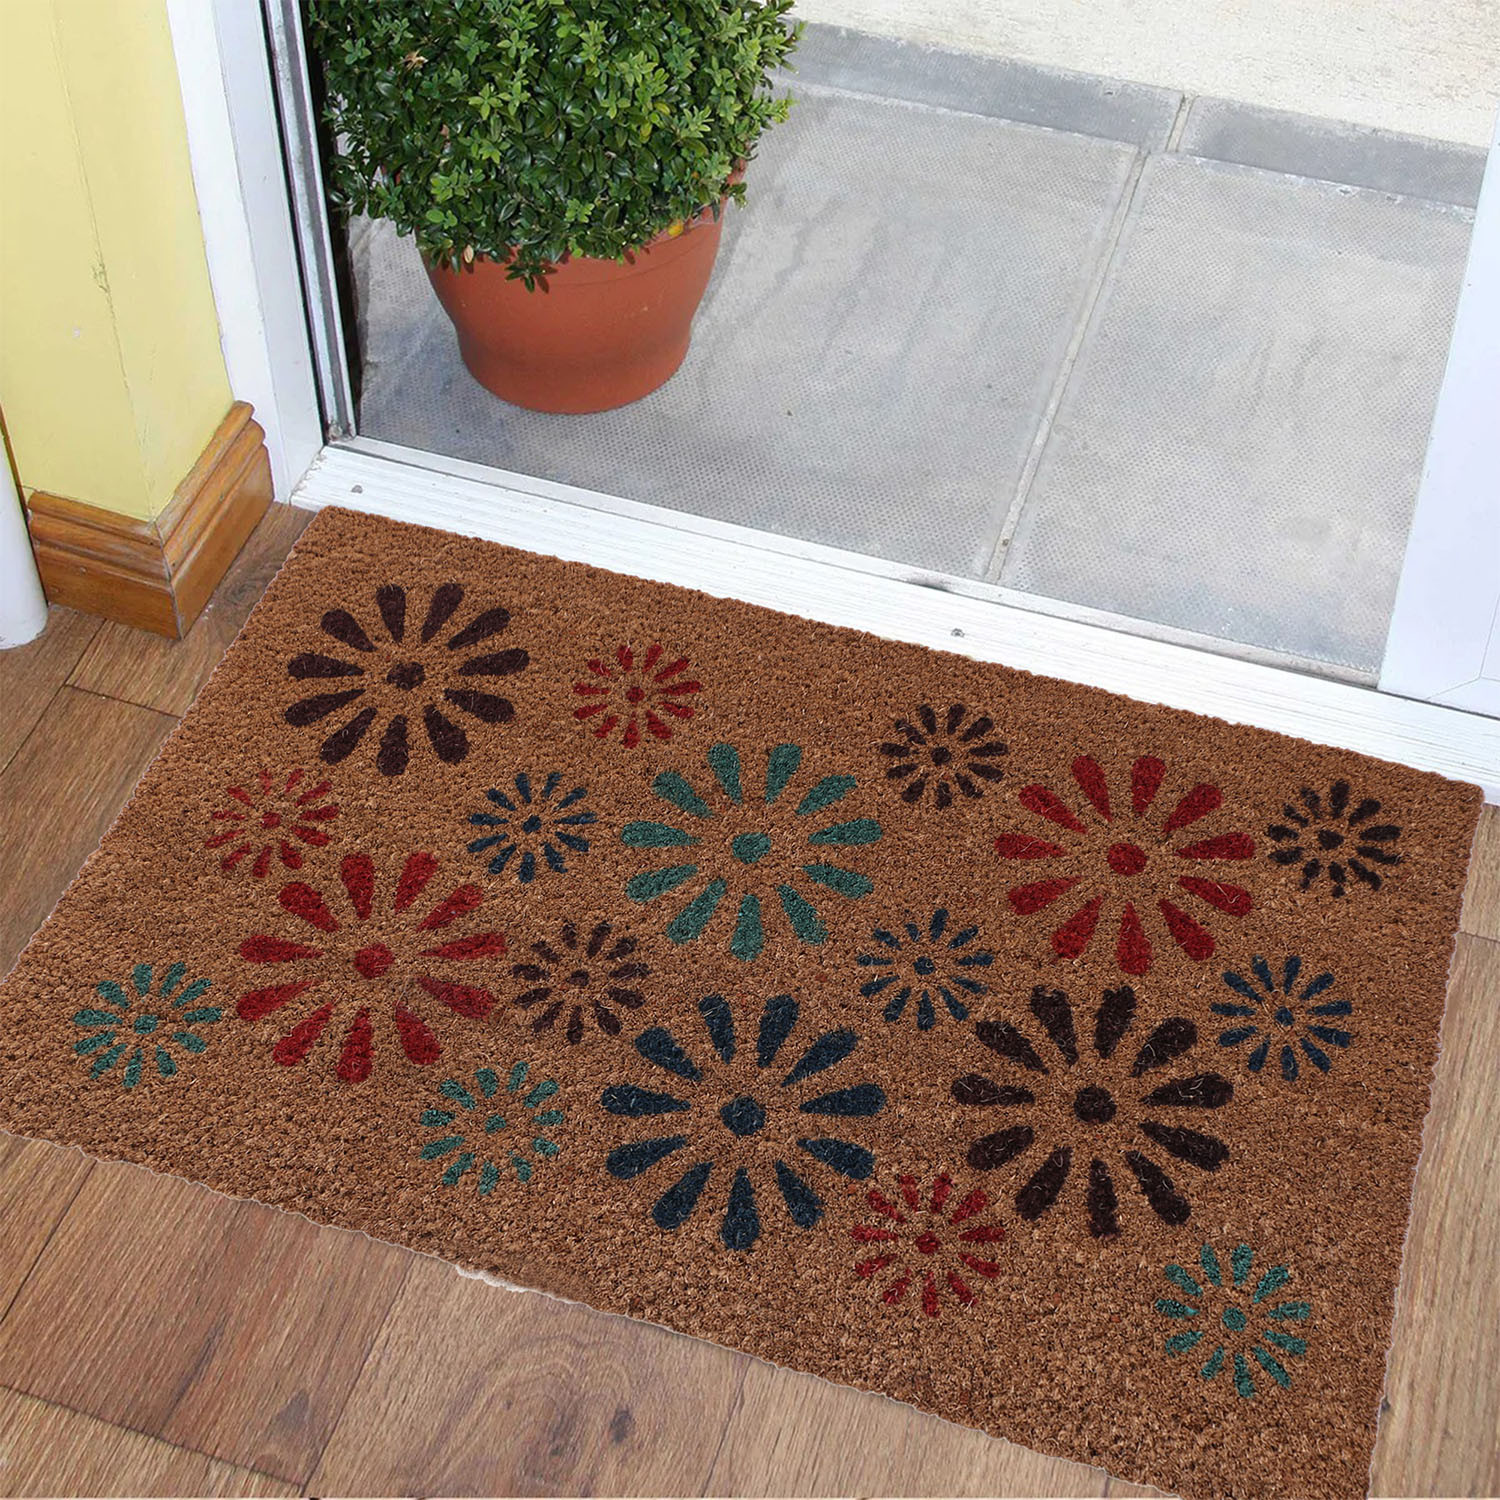 Kuber Industries Door Mat|Polyethylene Durable & Anti-Slip Natural Sunshine Print Floor Mat|Rug For Indoor or Outdoor, 30x20 Inch (Brown)